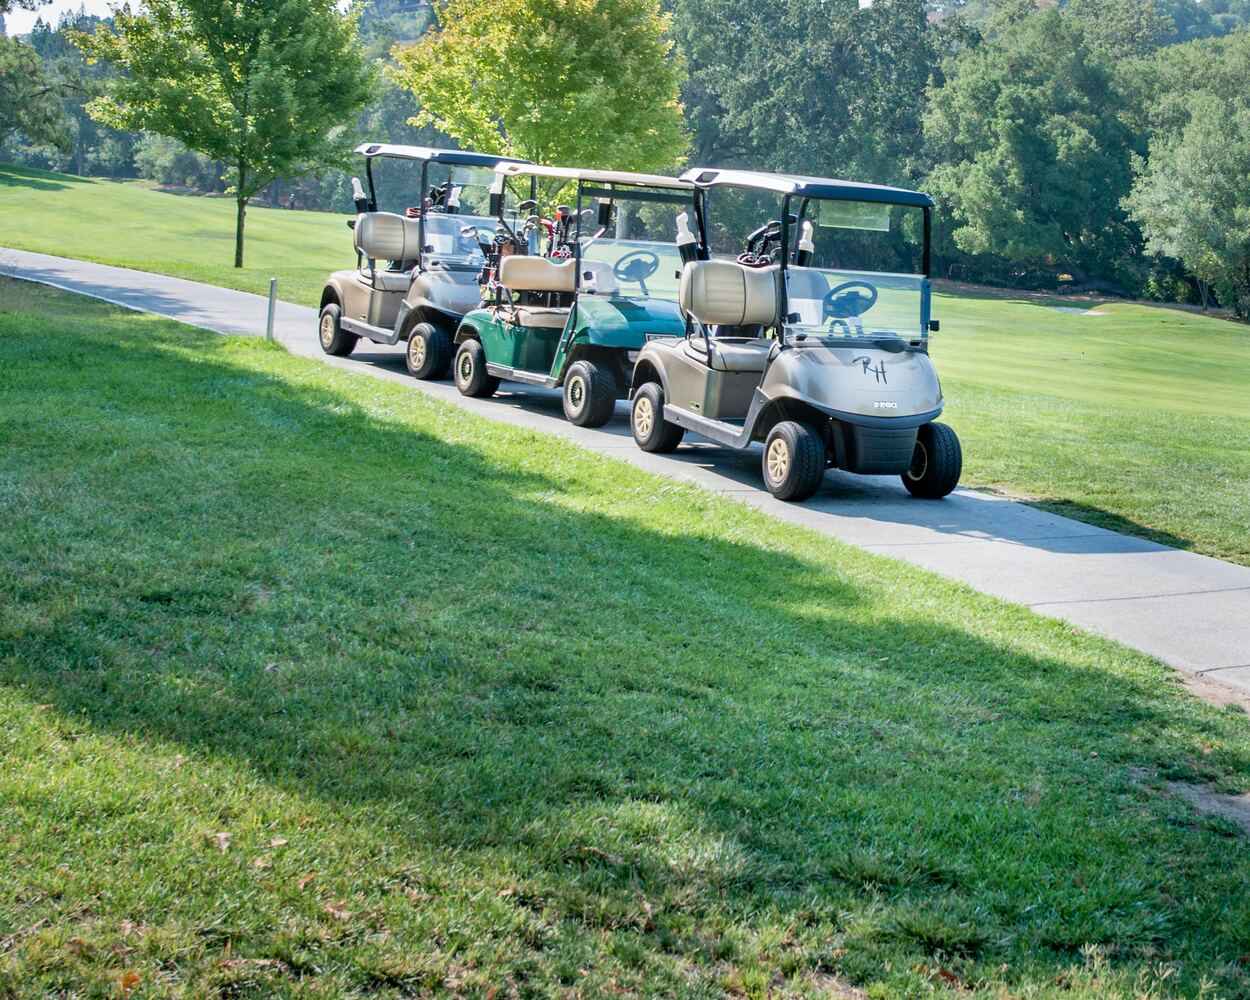 Three golf cart in a row.